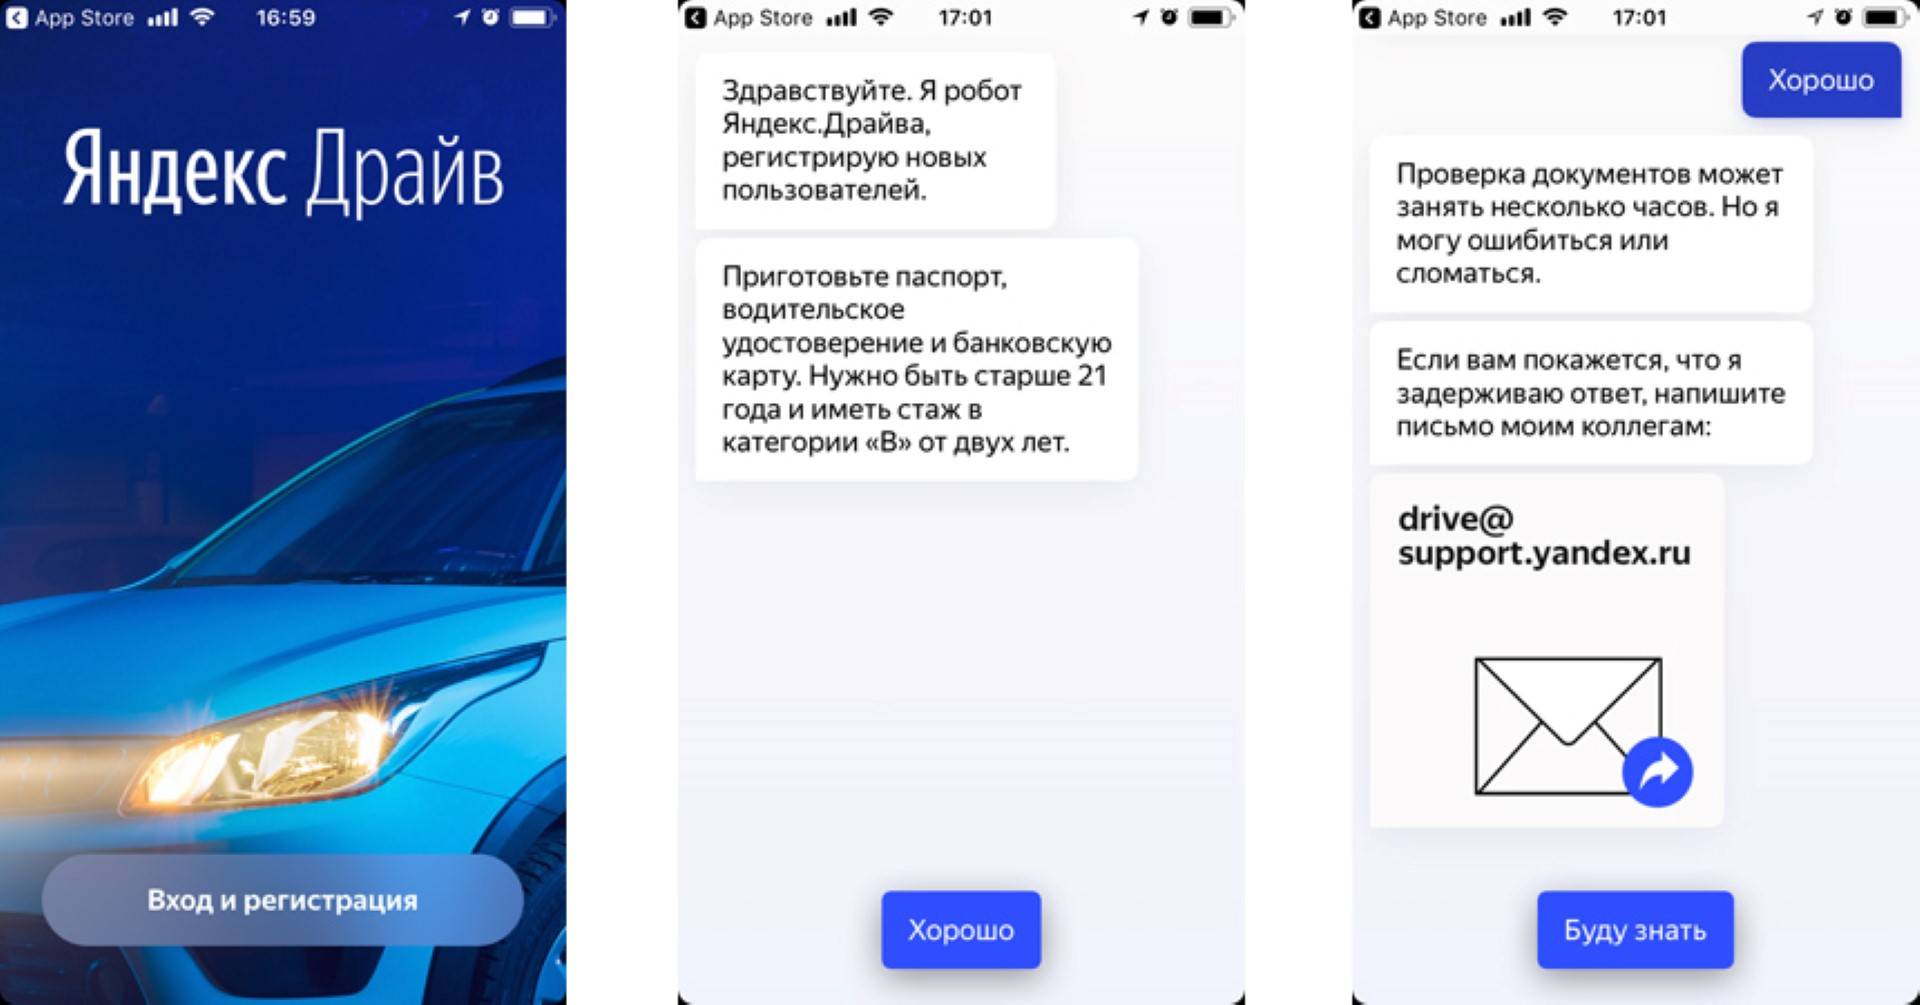 Правила использования нового сервиса каршеринга - Яндекс Драйв